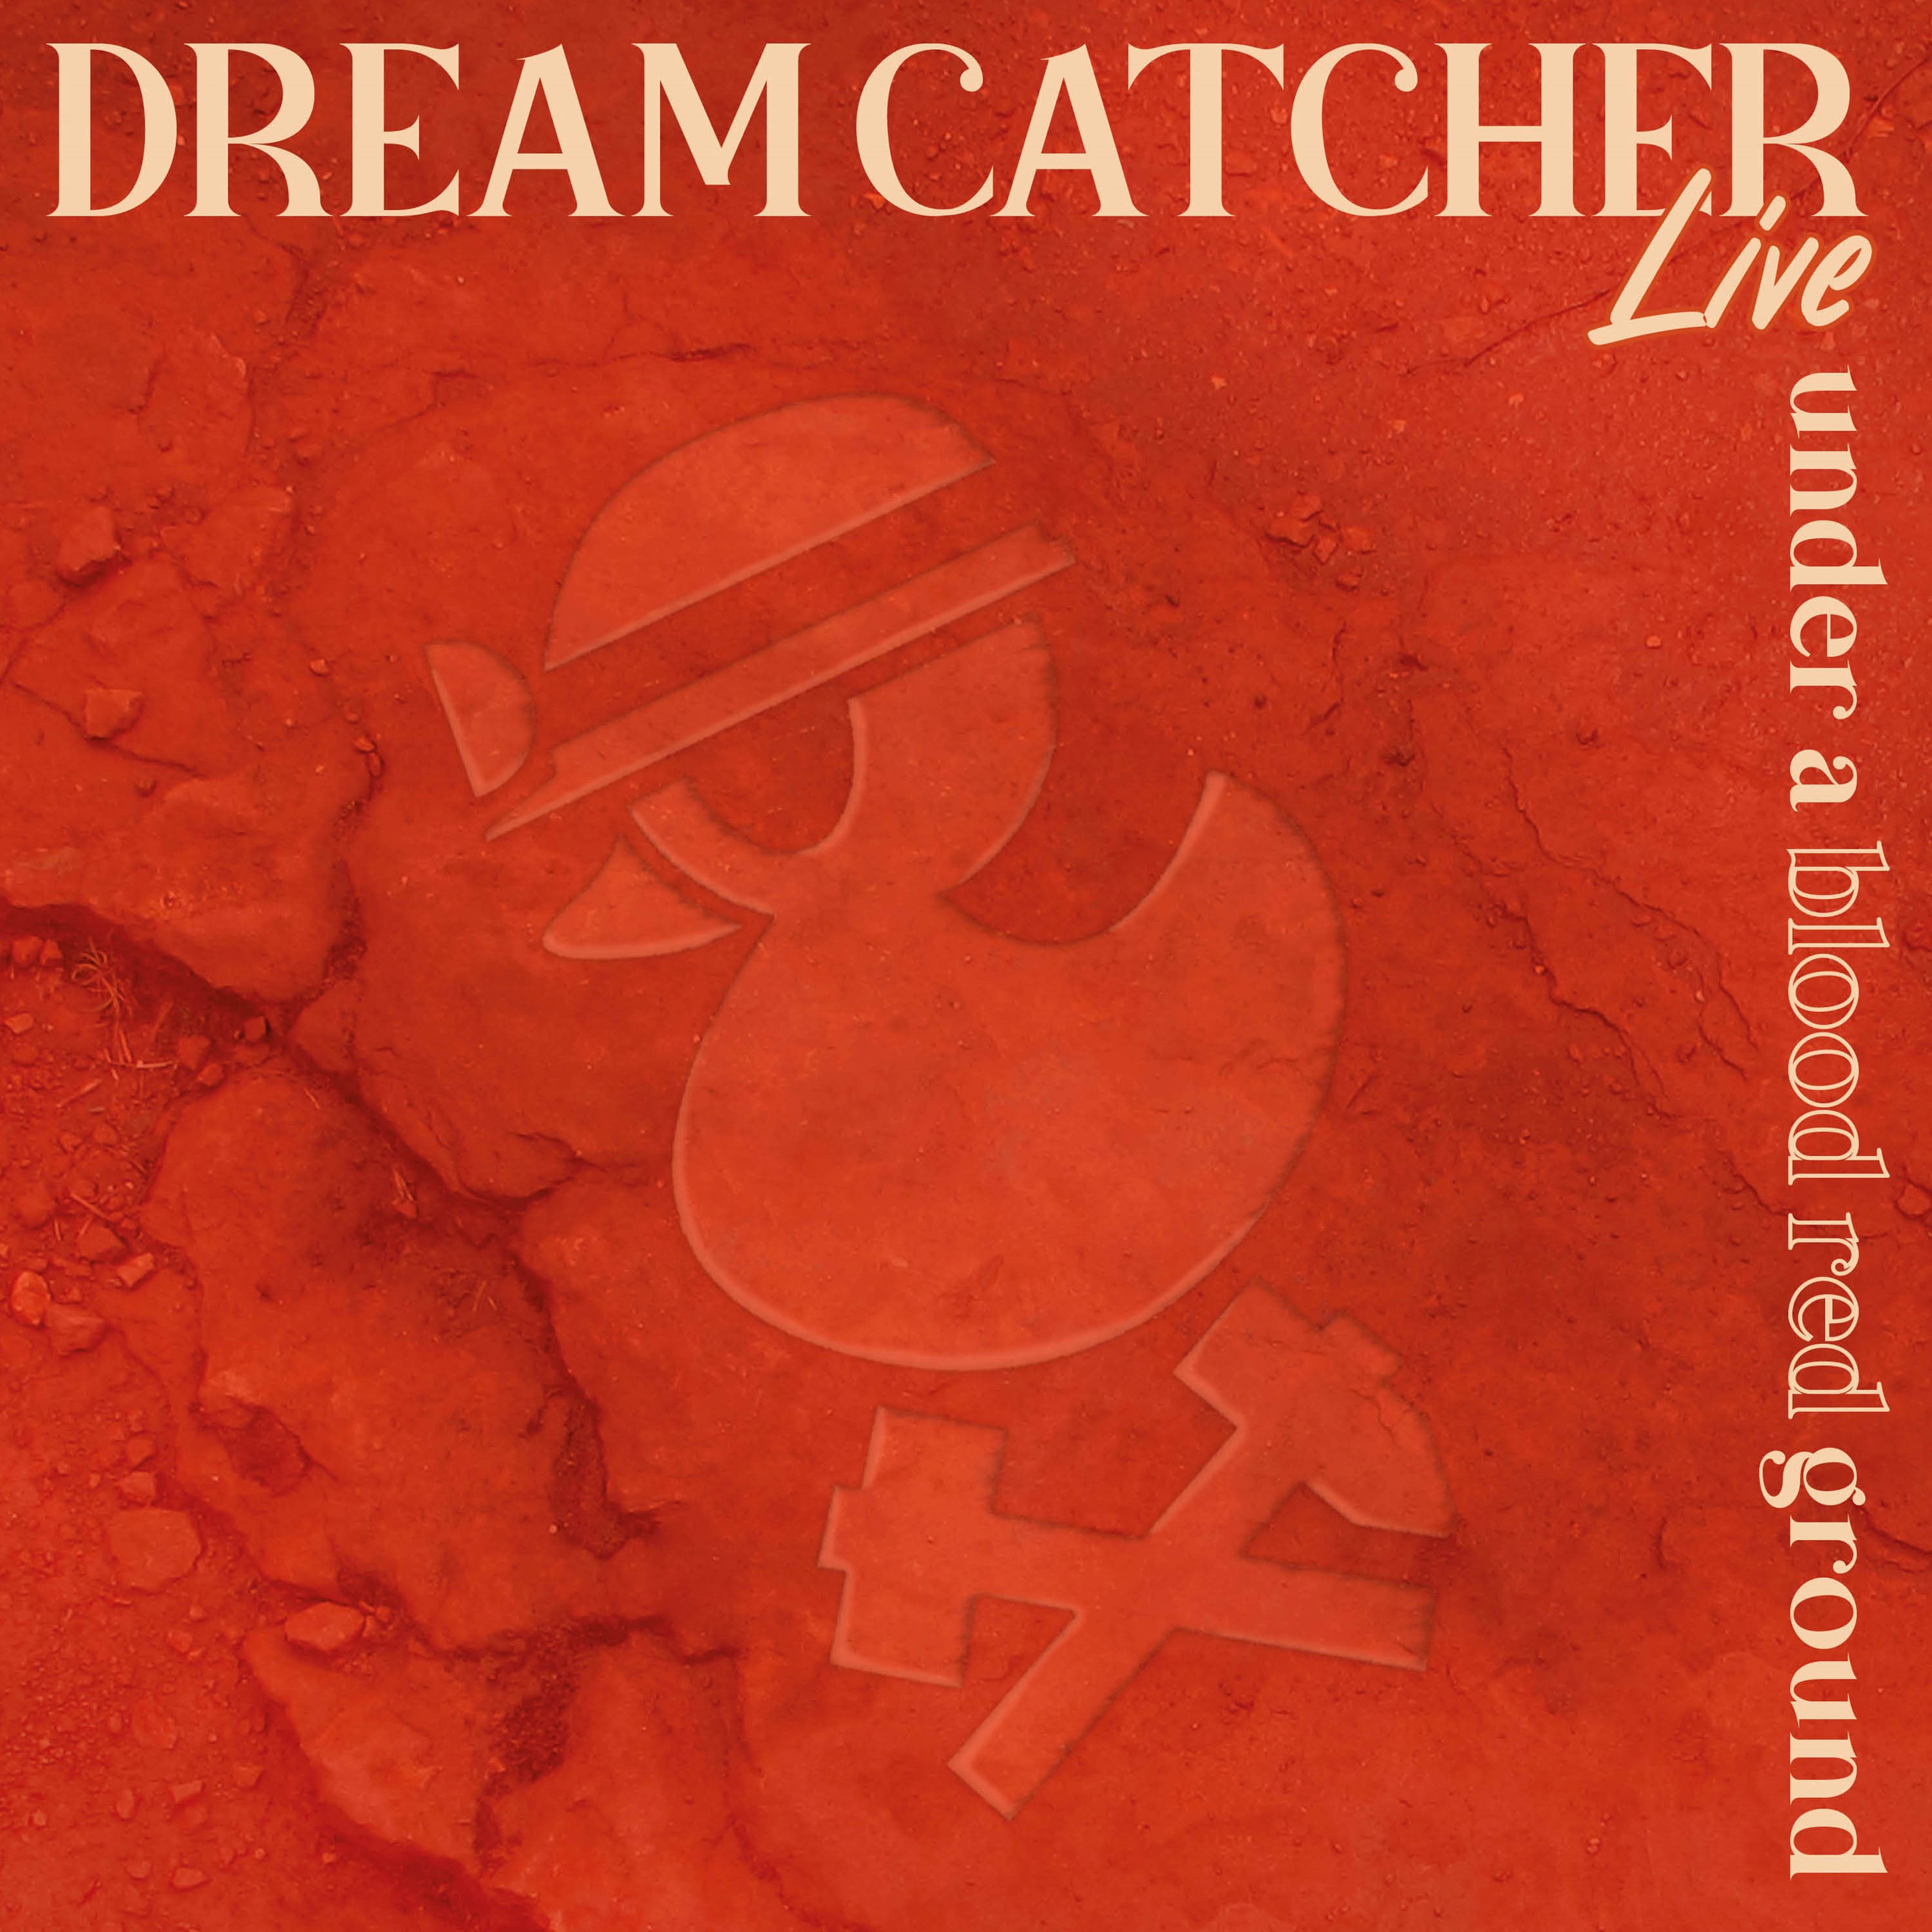 Album "Under a blood red ground", Dreamcatcher